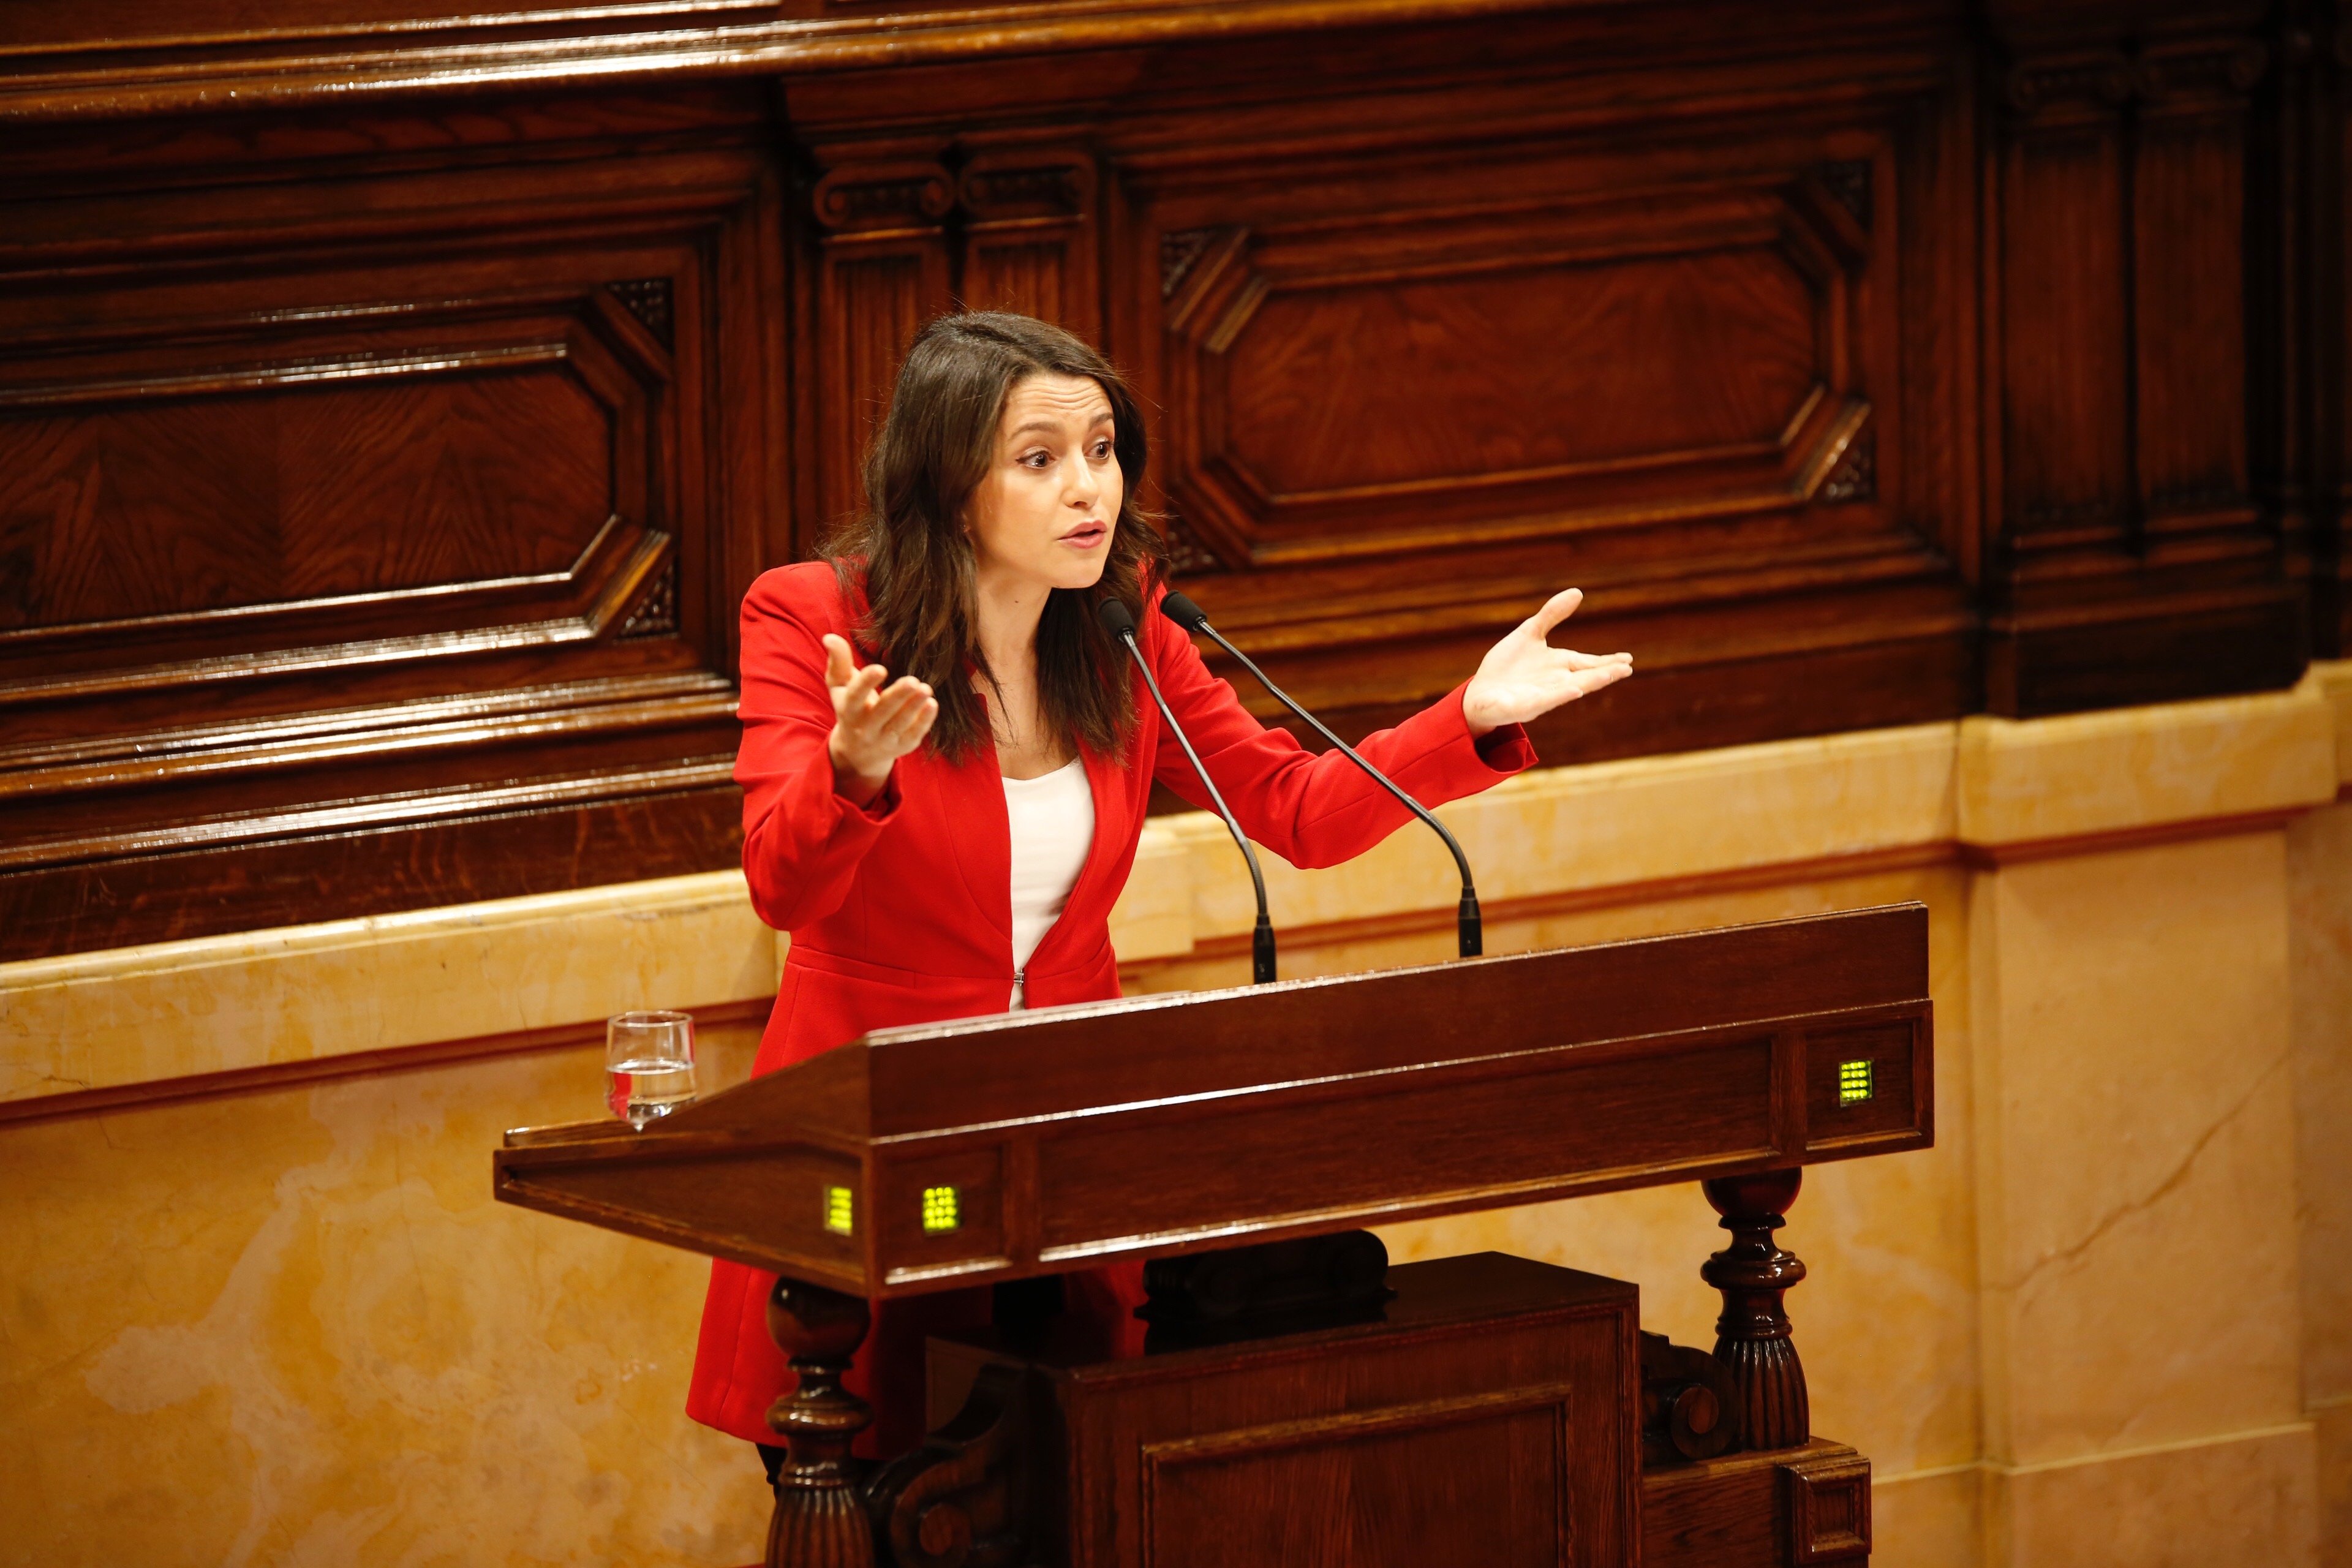 Arrimadas pone en tela de juicio a Sánchez por reunirse con el "separatismo"